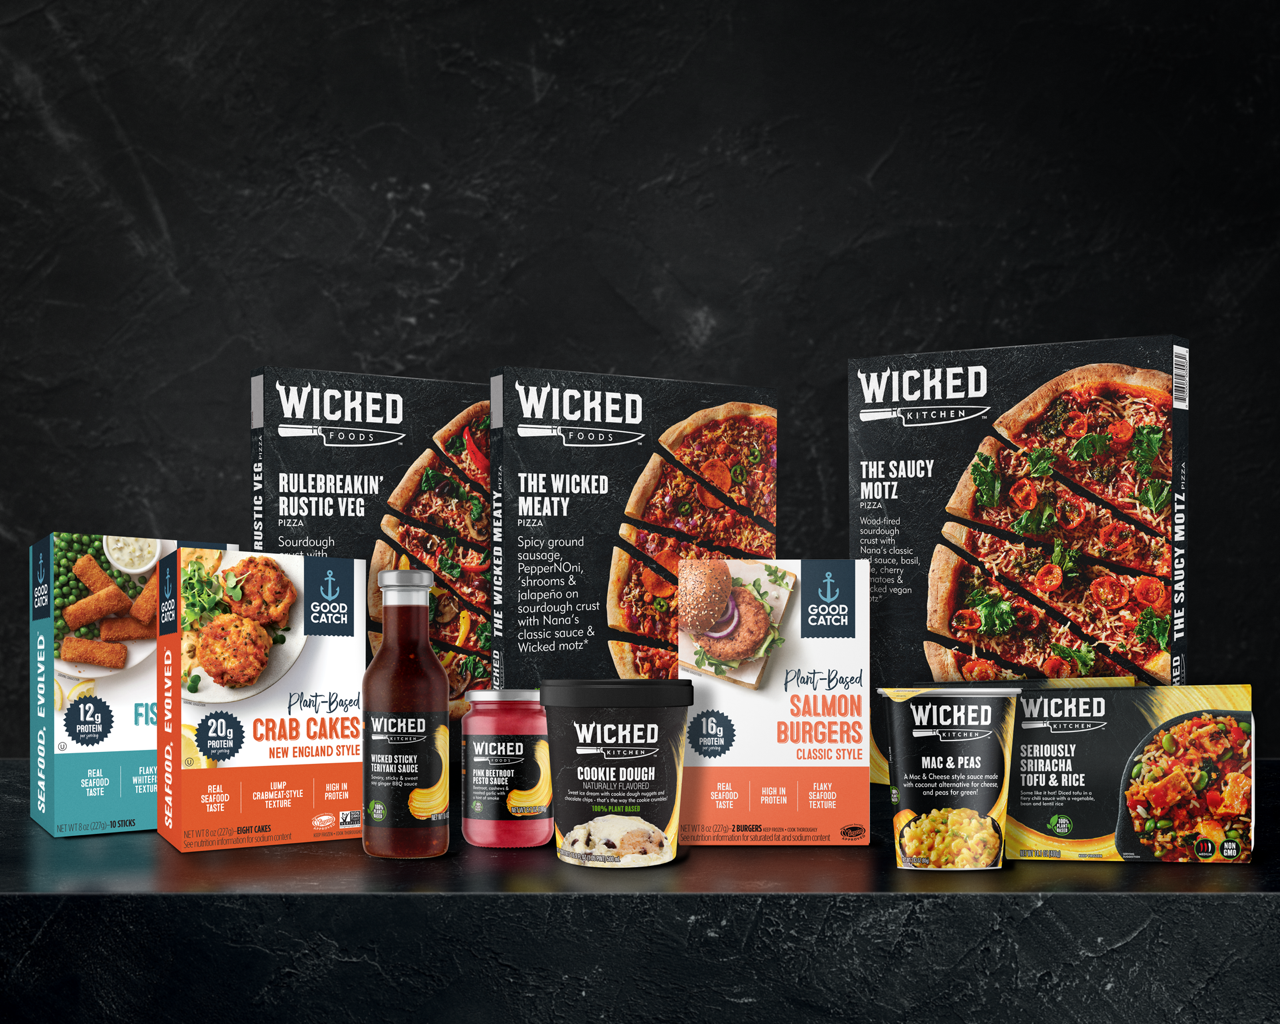 素食烹饪品牌Wicked Kitchen获2000万美元融资